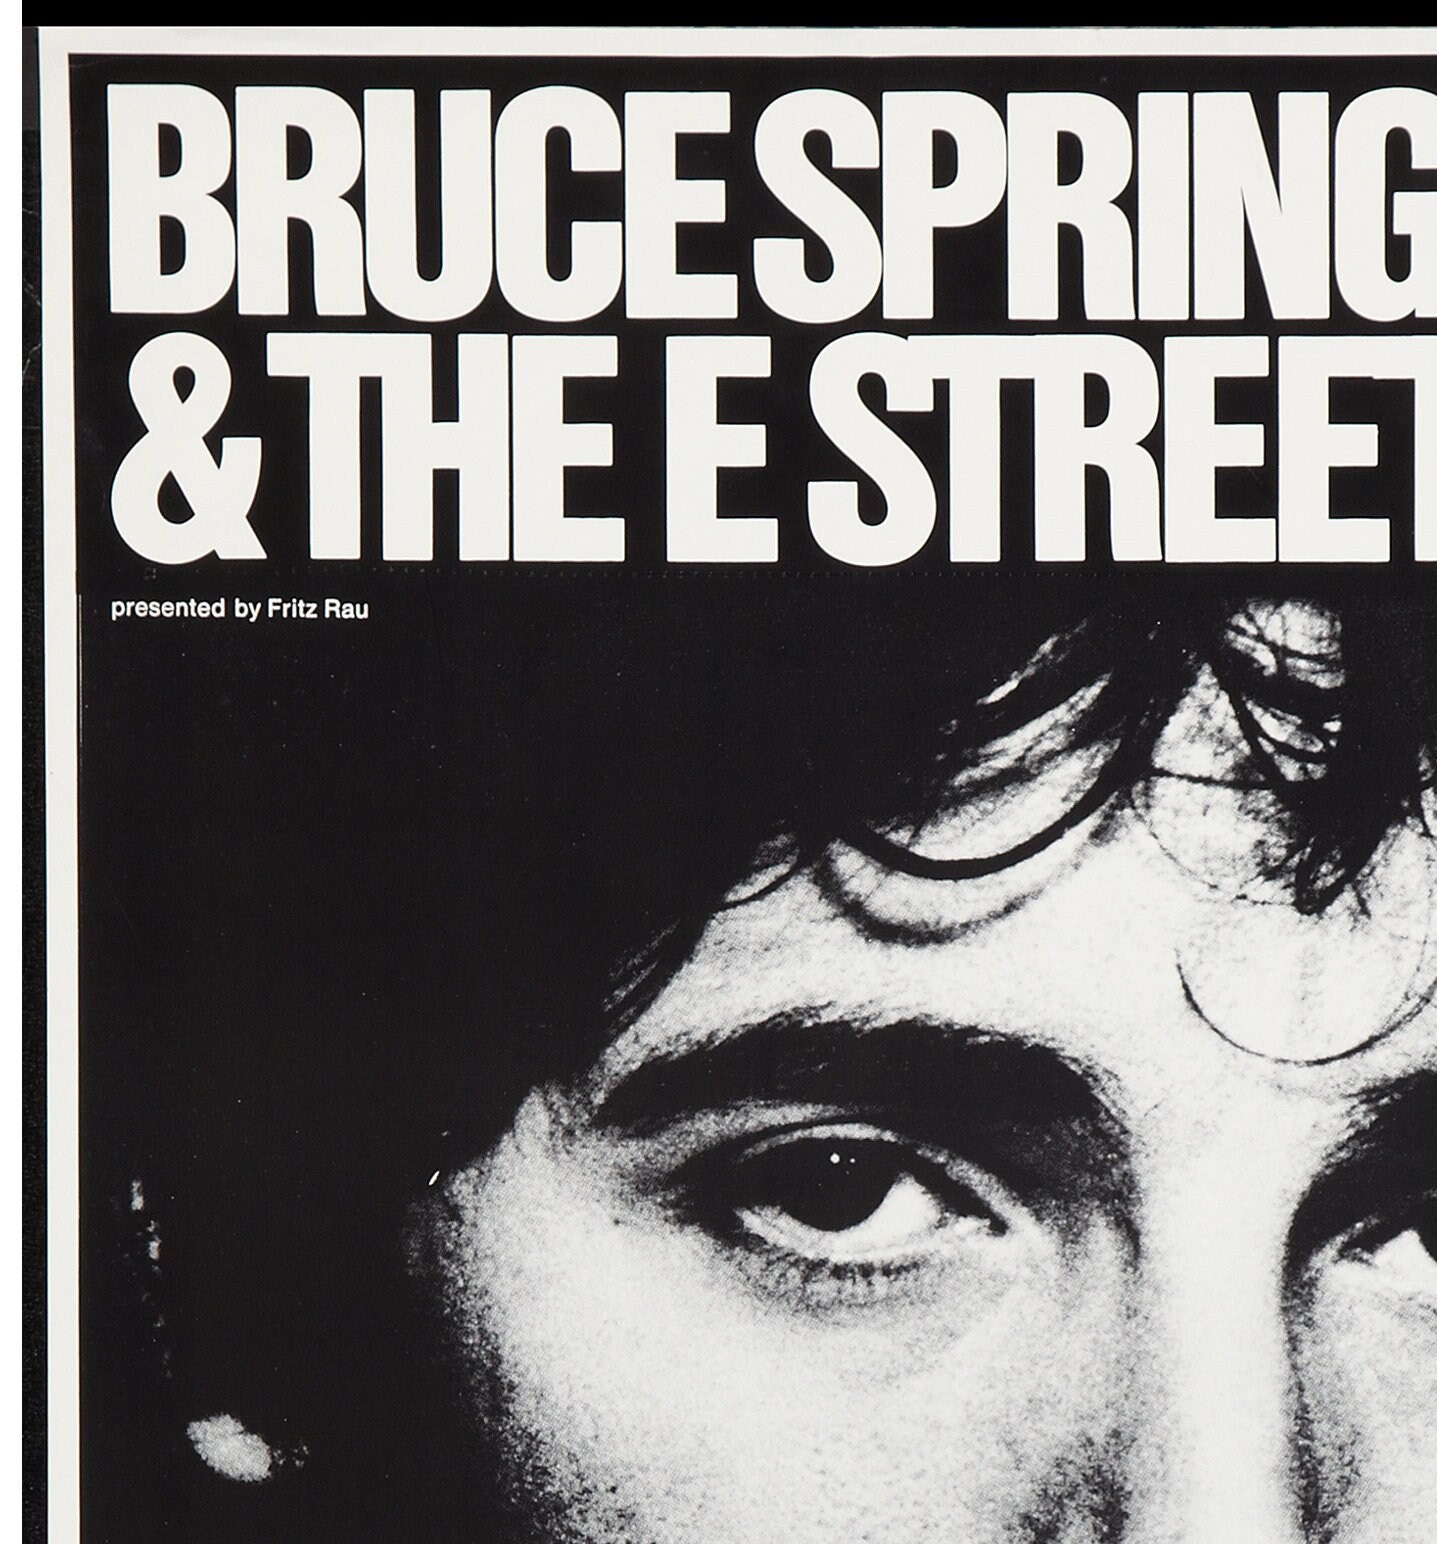 Bruce Springsteen concert poster, Bruce Springsteen vintage poster.